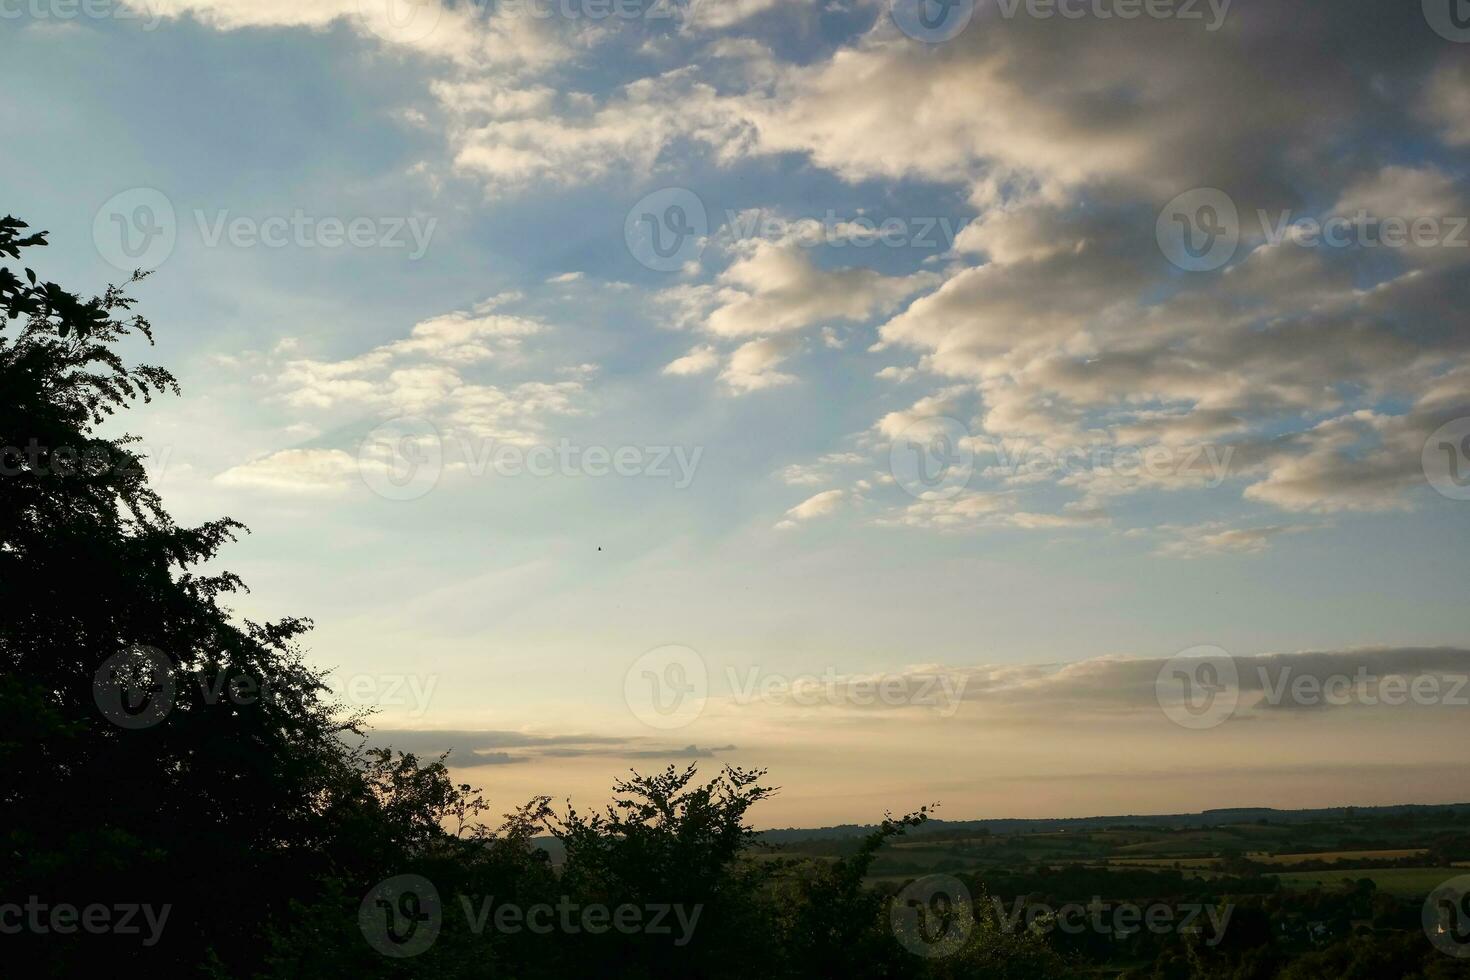 hoch Winkel Aussicht von schön Wolken und Himmel Über Luton Stadt während Sonnenuntergang foto